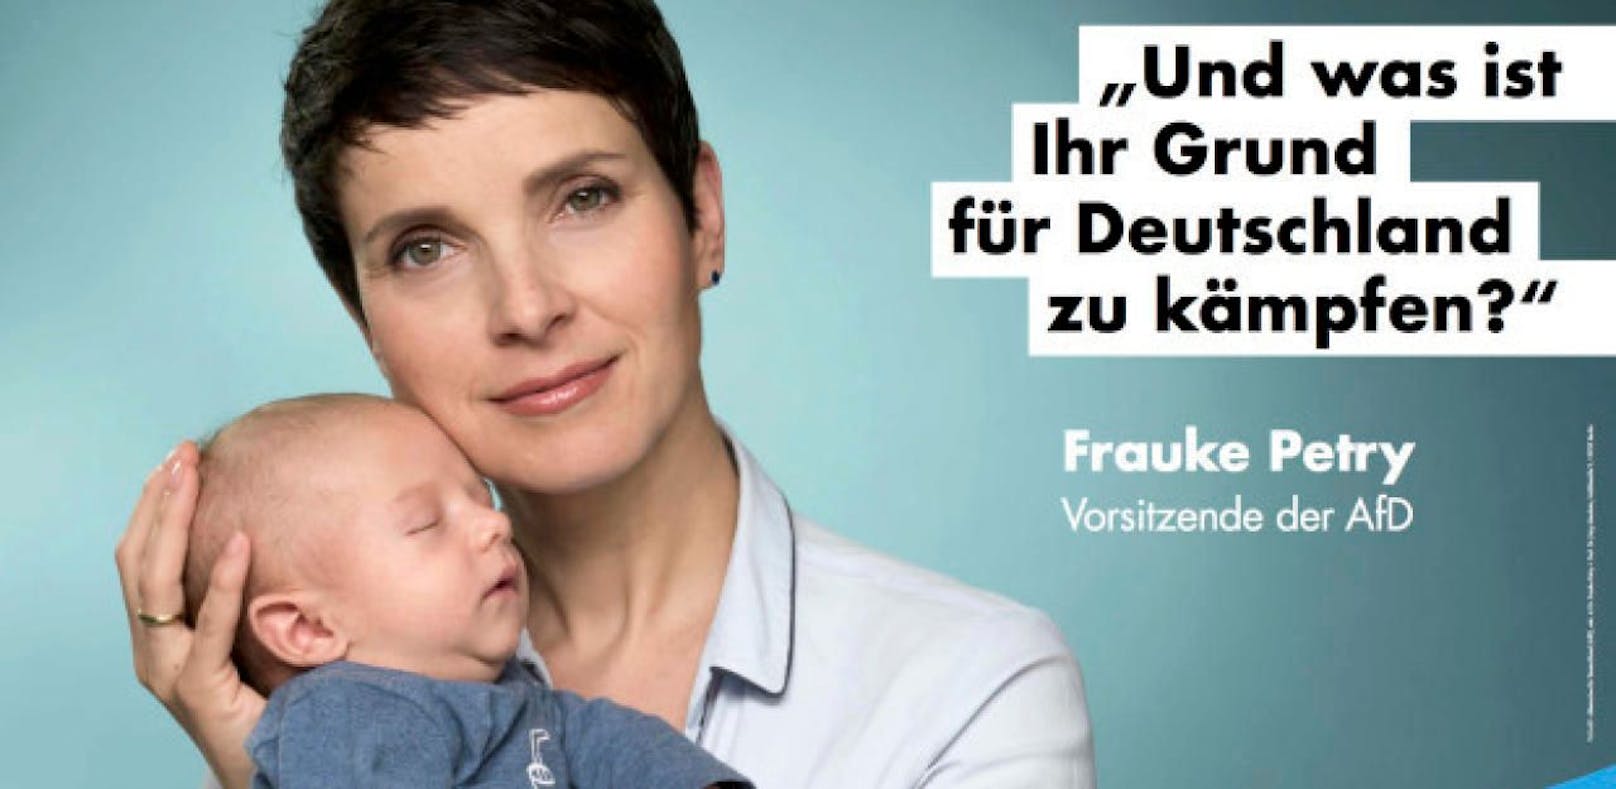 Frauke Petry zeigt sich auf Wahlplakat mit ihrem Baby